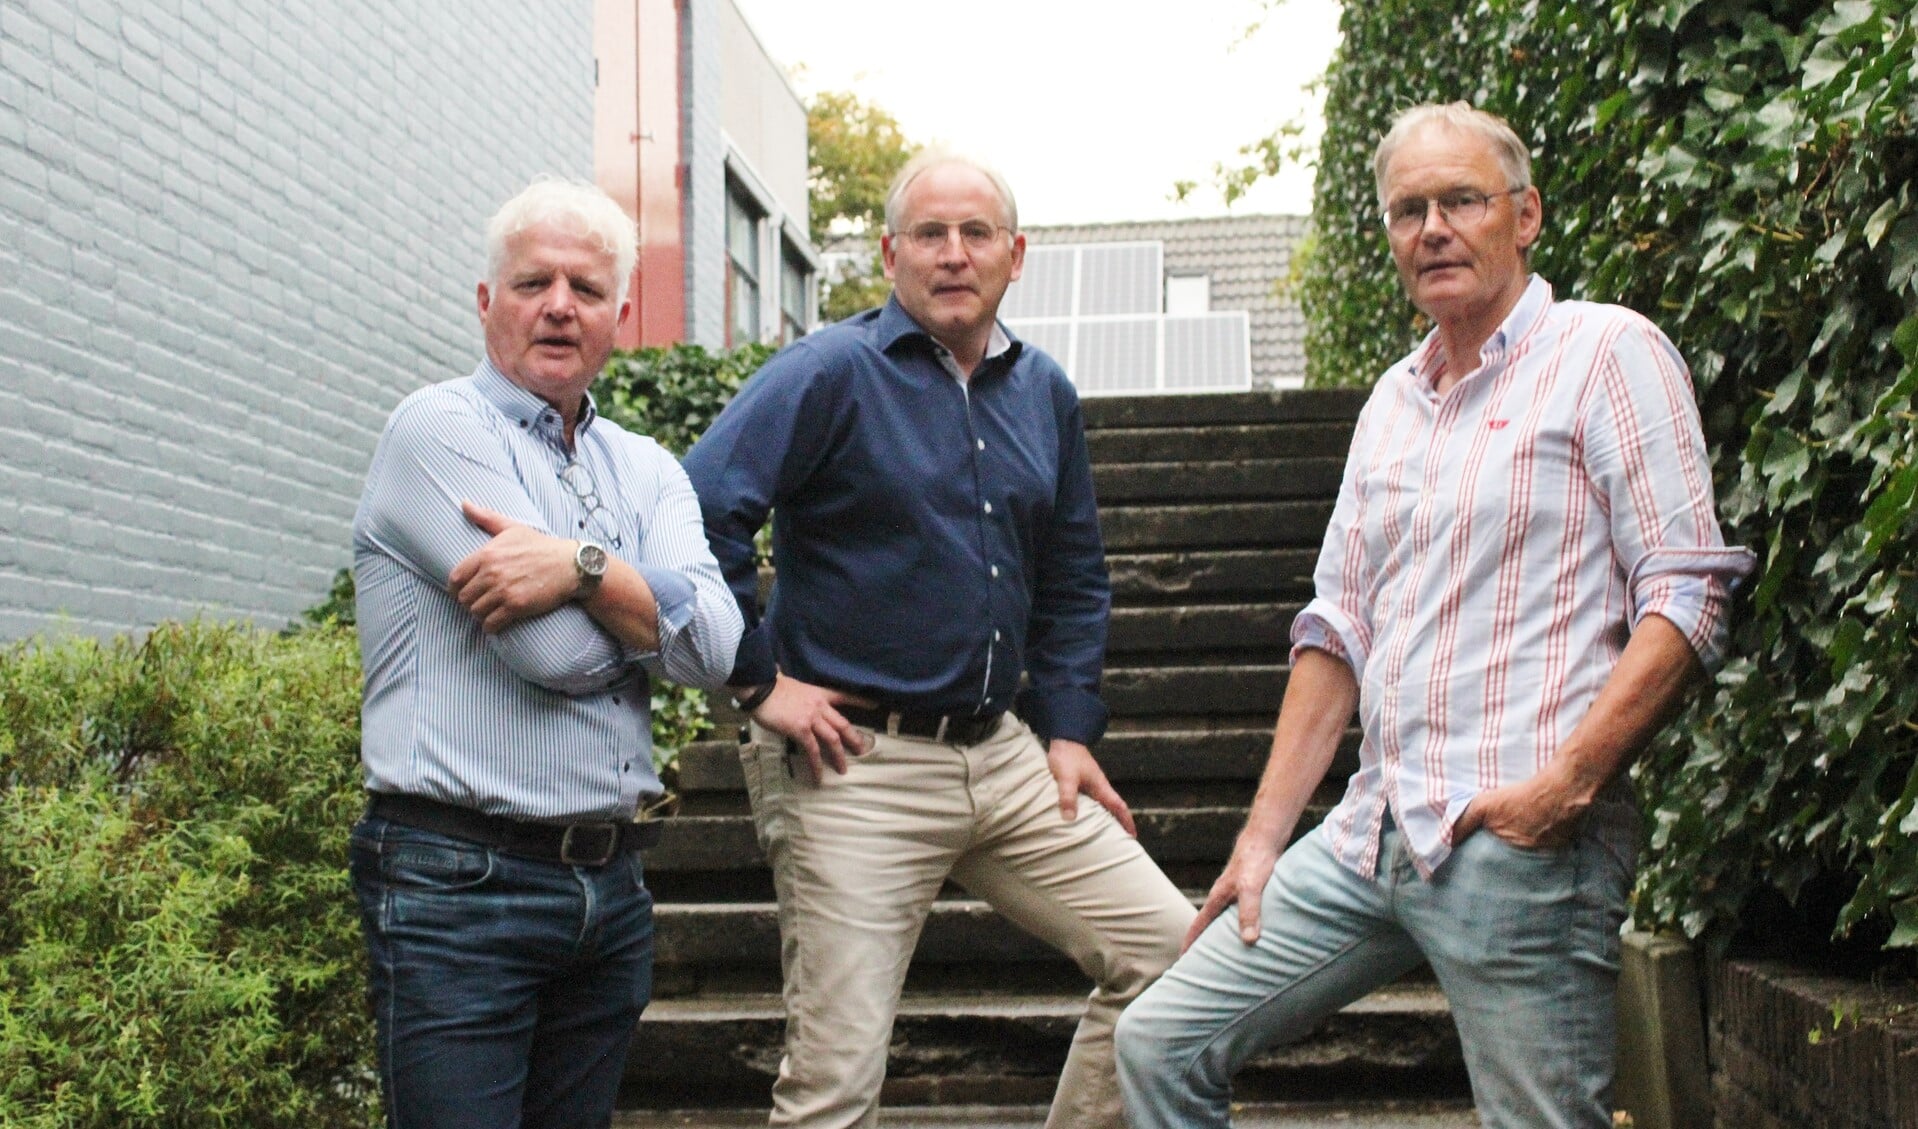 Vlnr: André van Gessel, Albert Boschker en John Teunissen, op de nostalgische trap van de voormalige Galamaschool. Foto: Marlous Velthausz